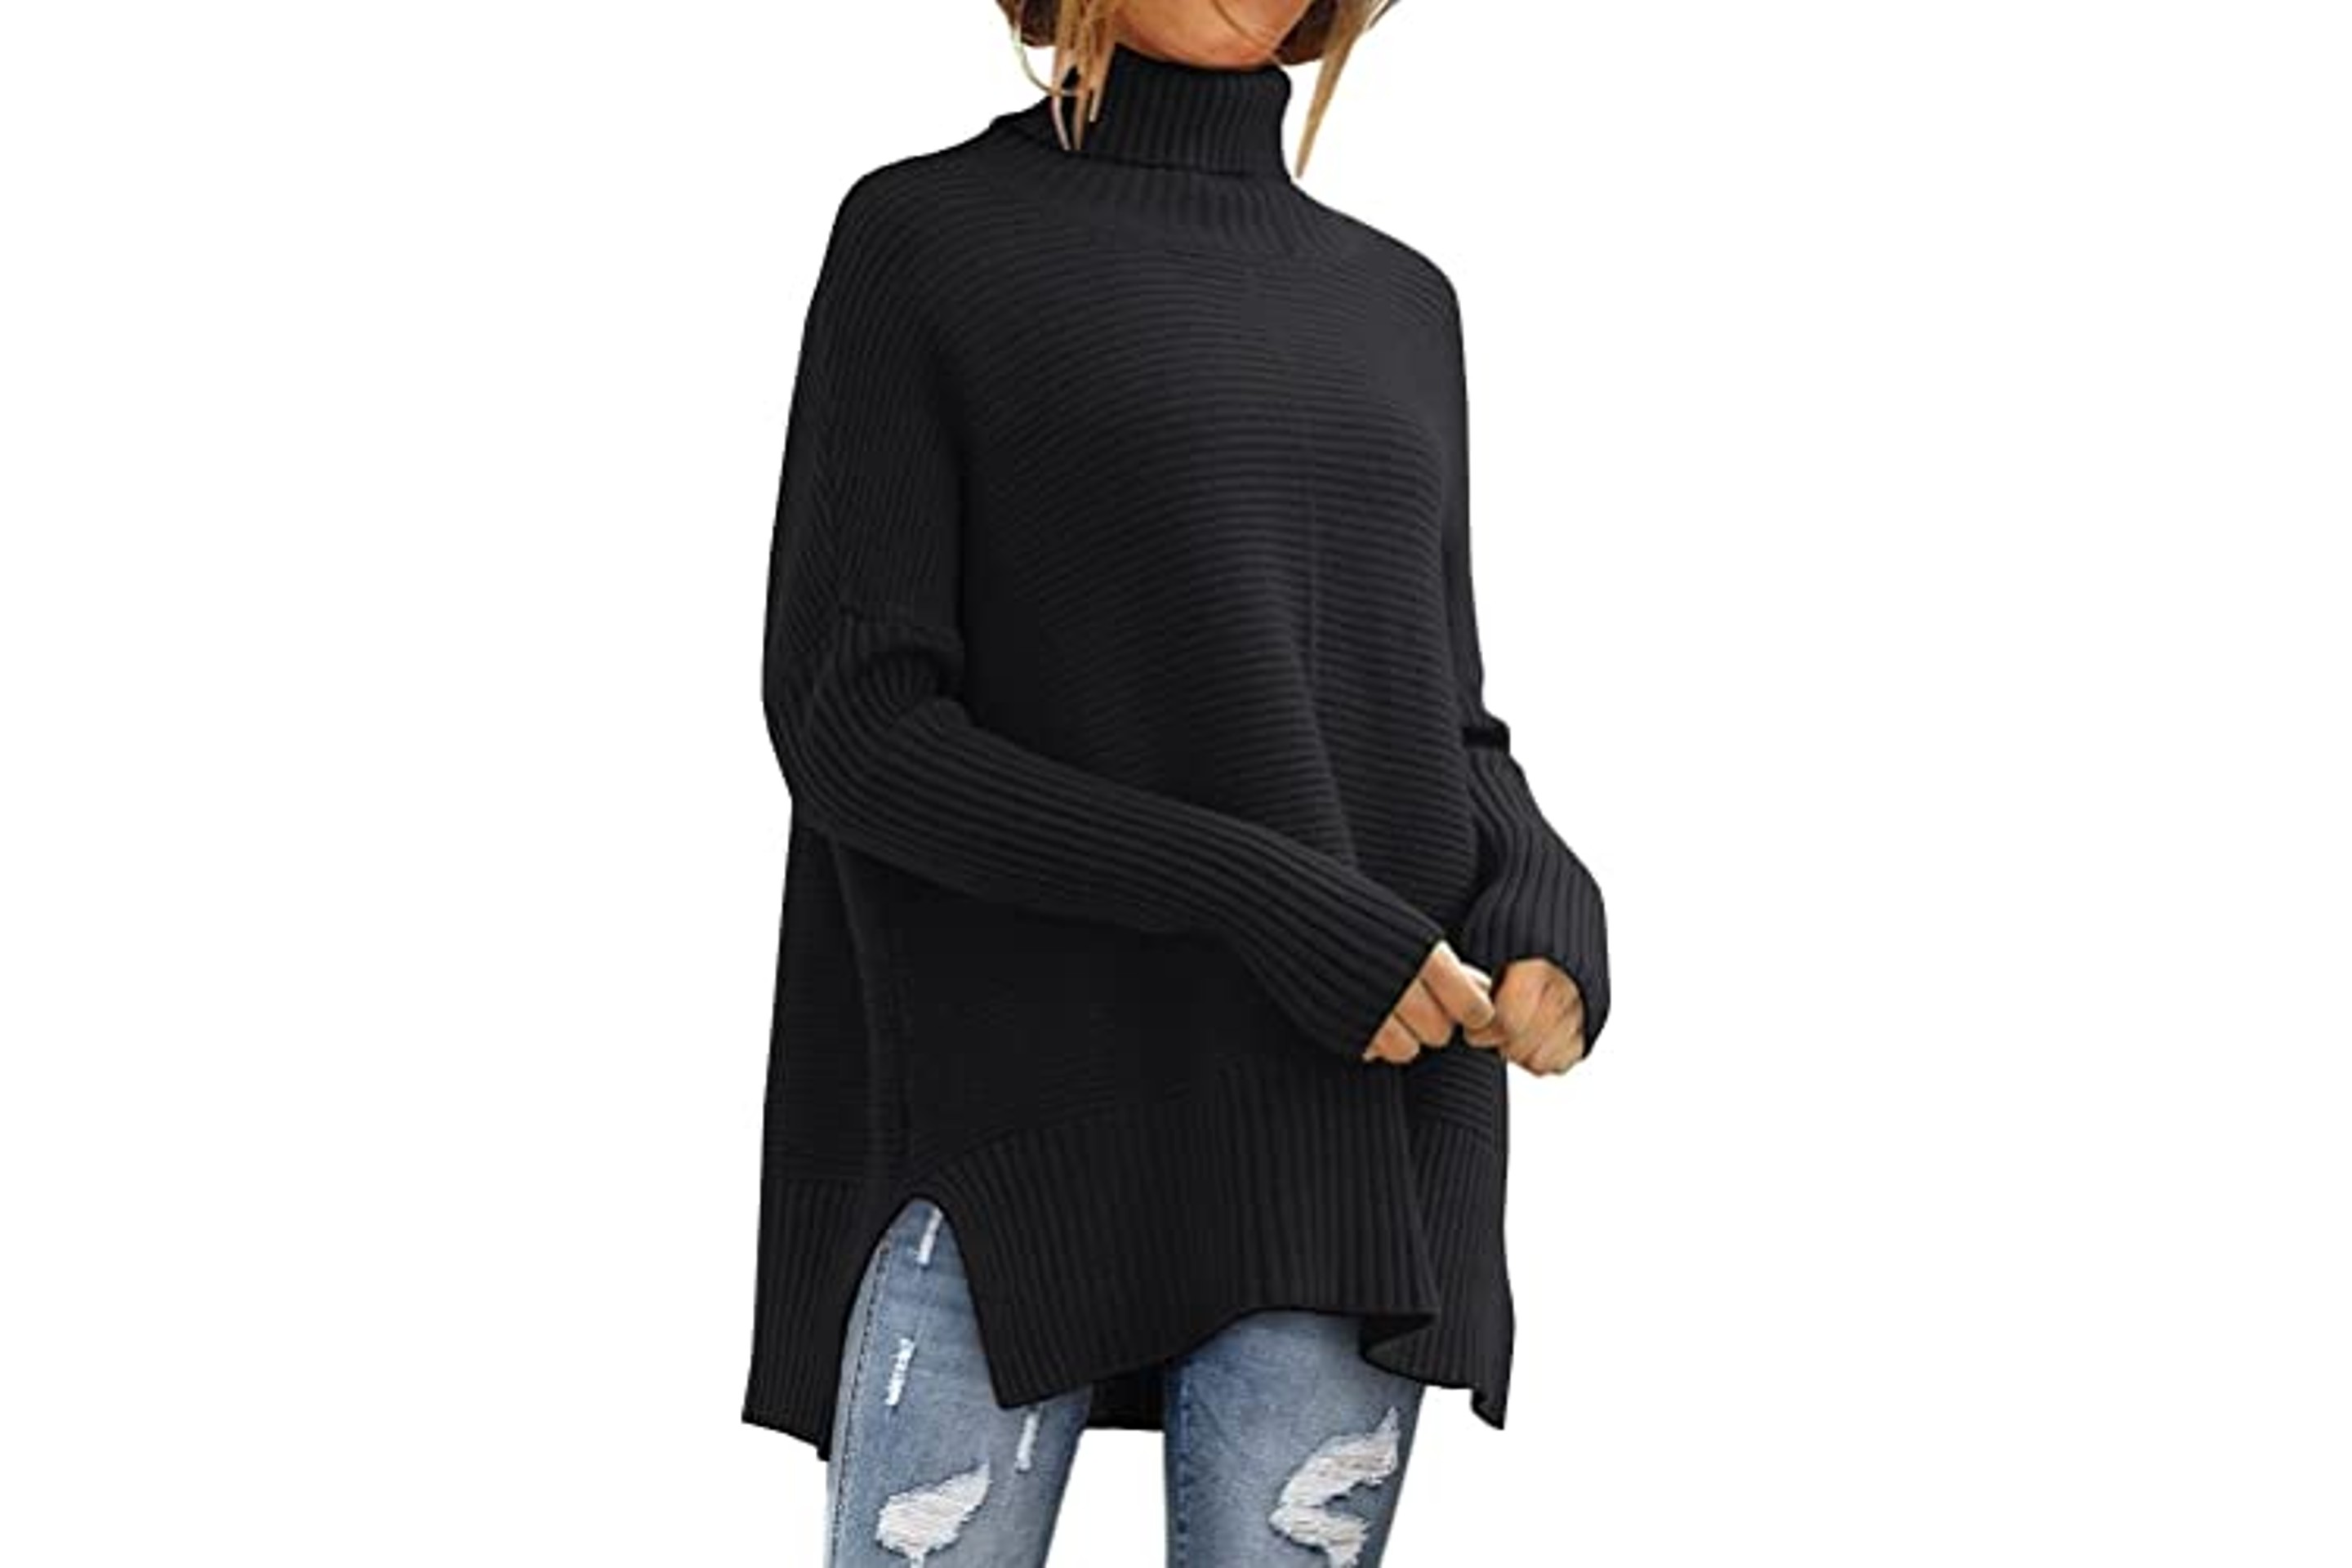 Womenâs Trendy Oversized Turtleneck Sweater